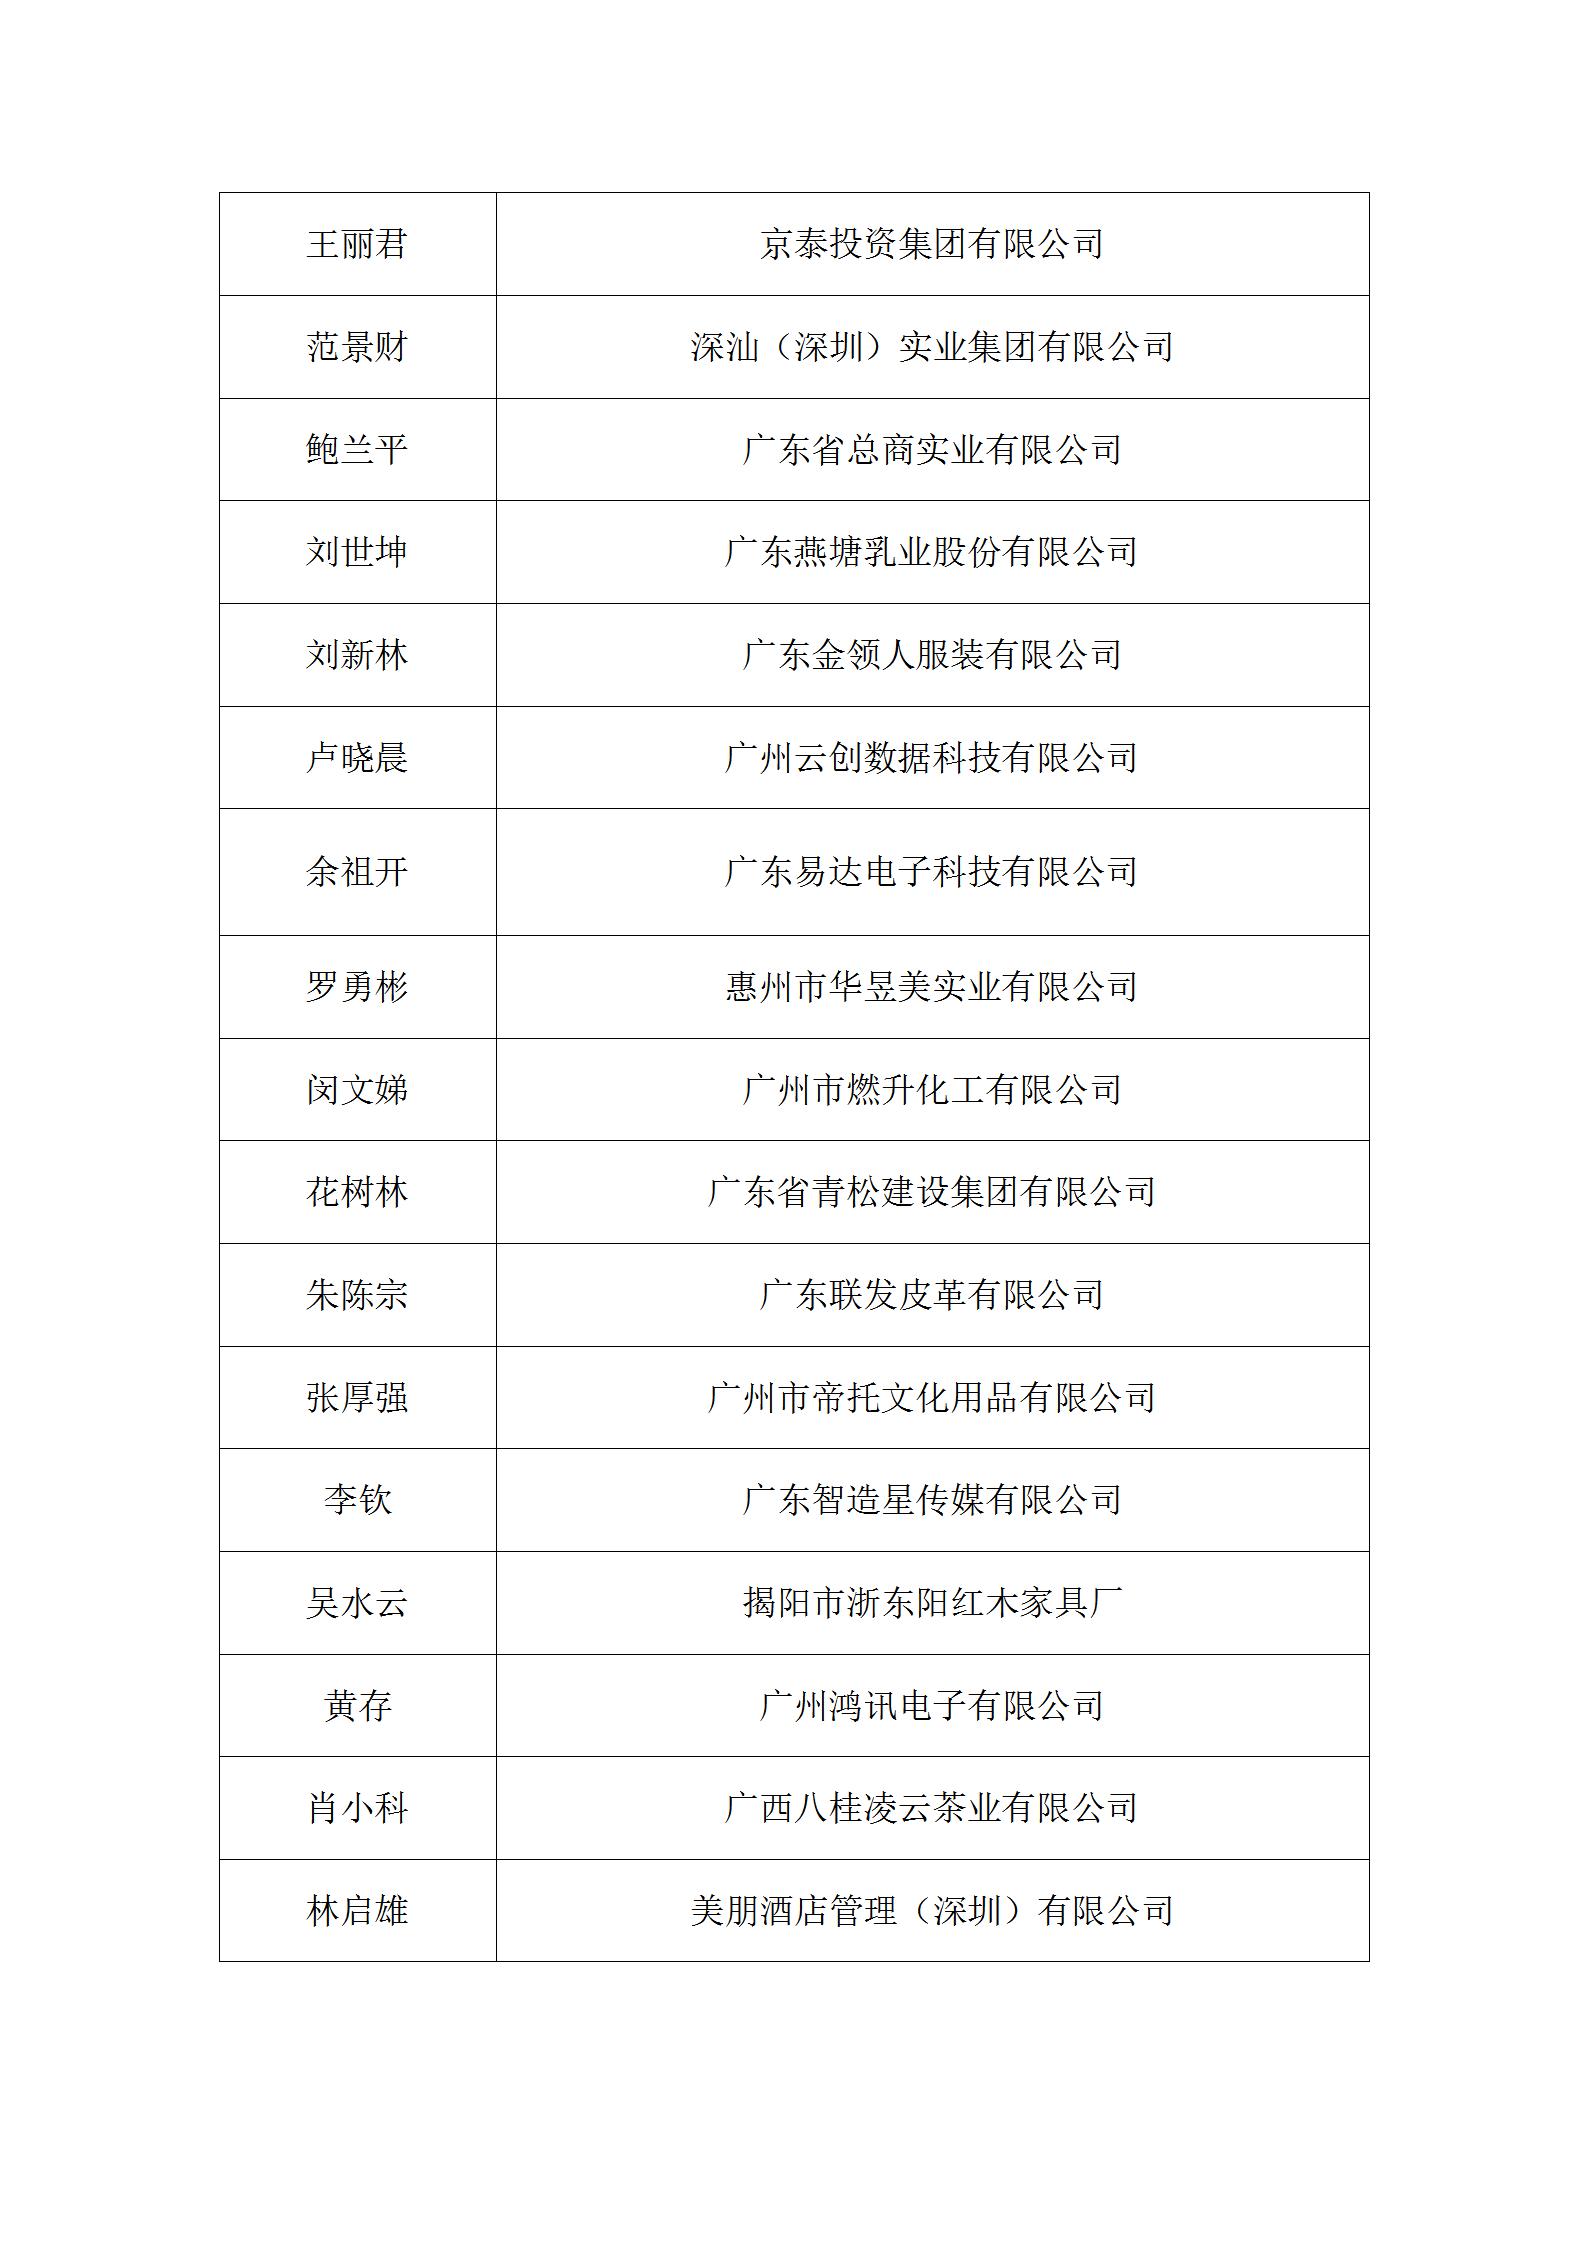 经省经企联第七届换届领导小组审查确认会员名单公告_02.jpg